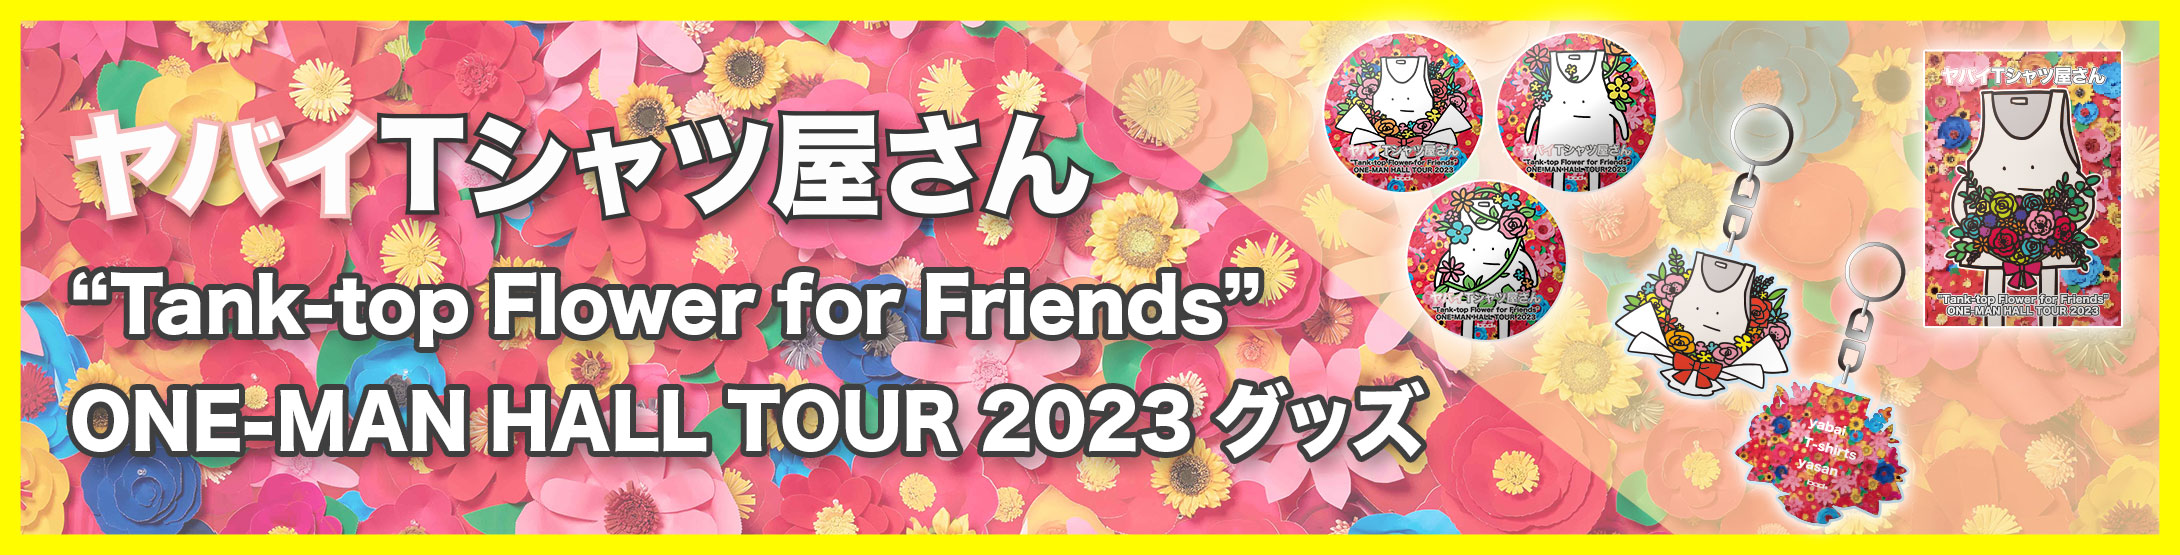 ヤバイTシャツ屋さん “Tank-top Flower for Friends” ONE-MAN HALL TOUR 2023 グッズ情報